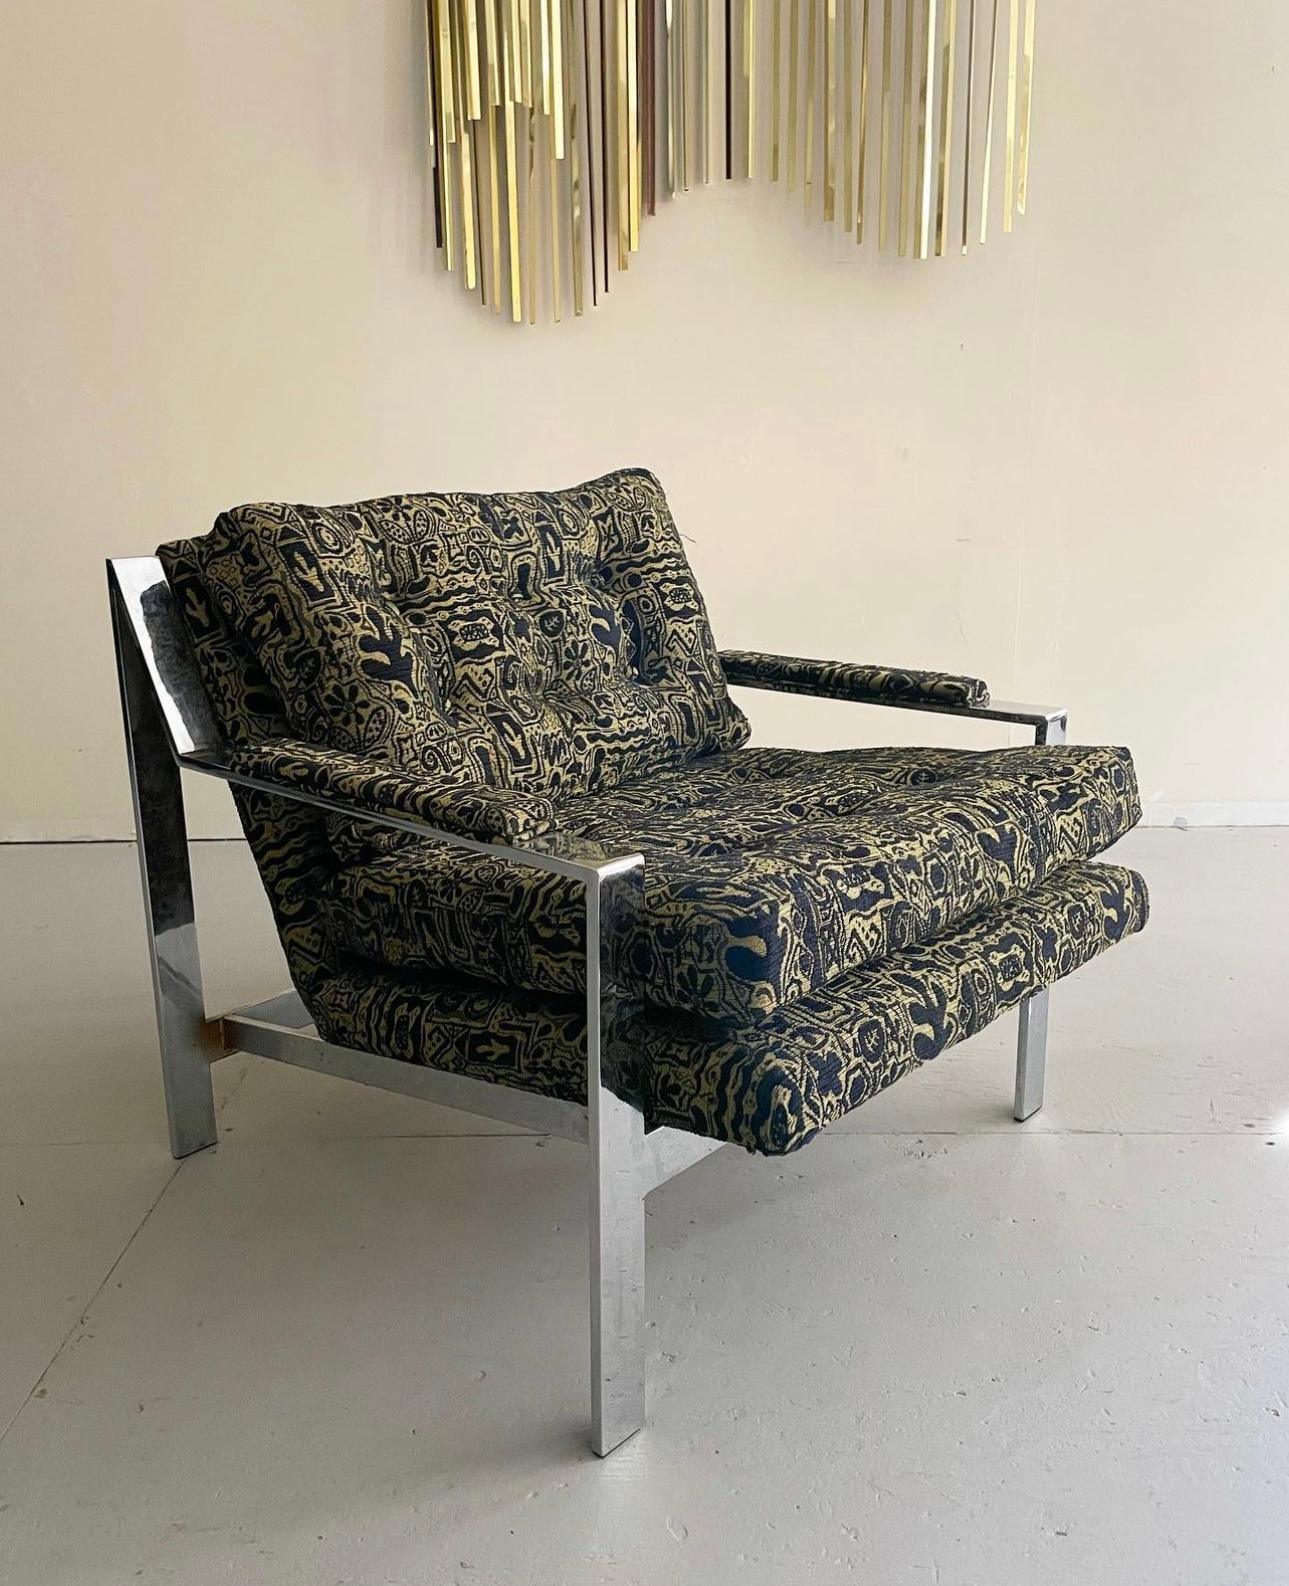 Chaise longue cubique en chrome de style moderne du milieu du siècle, conçue par Cy Mann. Cette chaise est dotée d'une finition chromée réfléchissante et d'un rembourrage et d'une mousse géométriques uniques et inédits. Conçu par Cy Mann vers 1960.